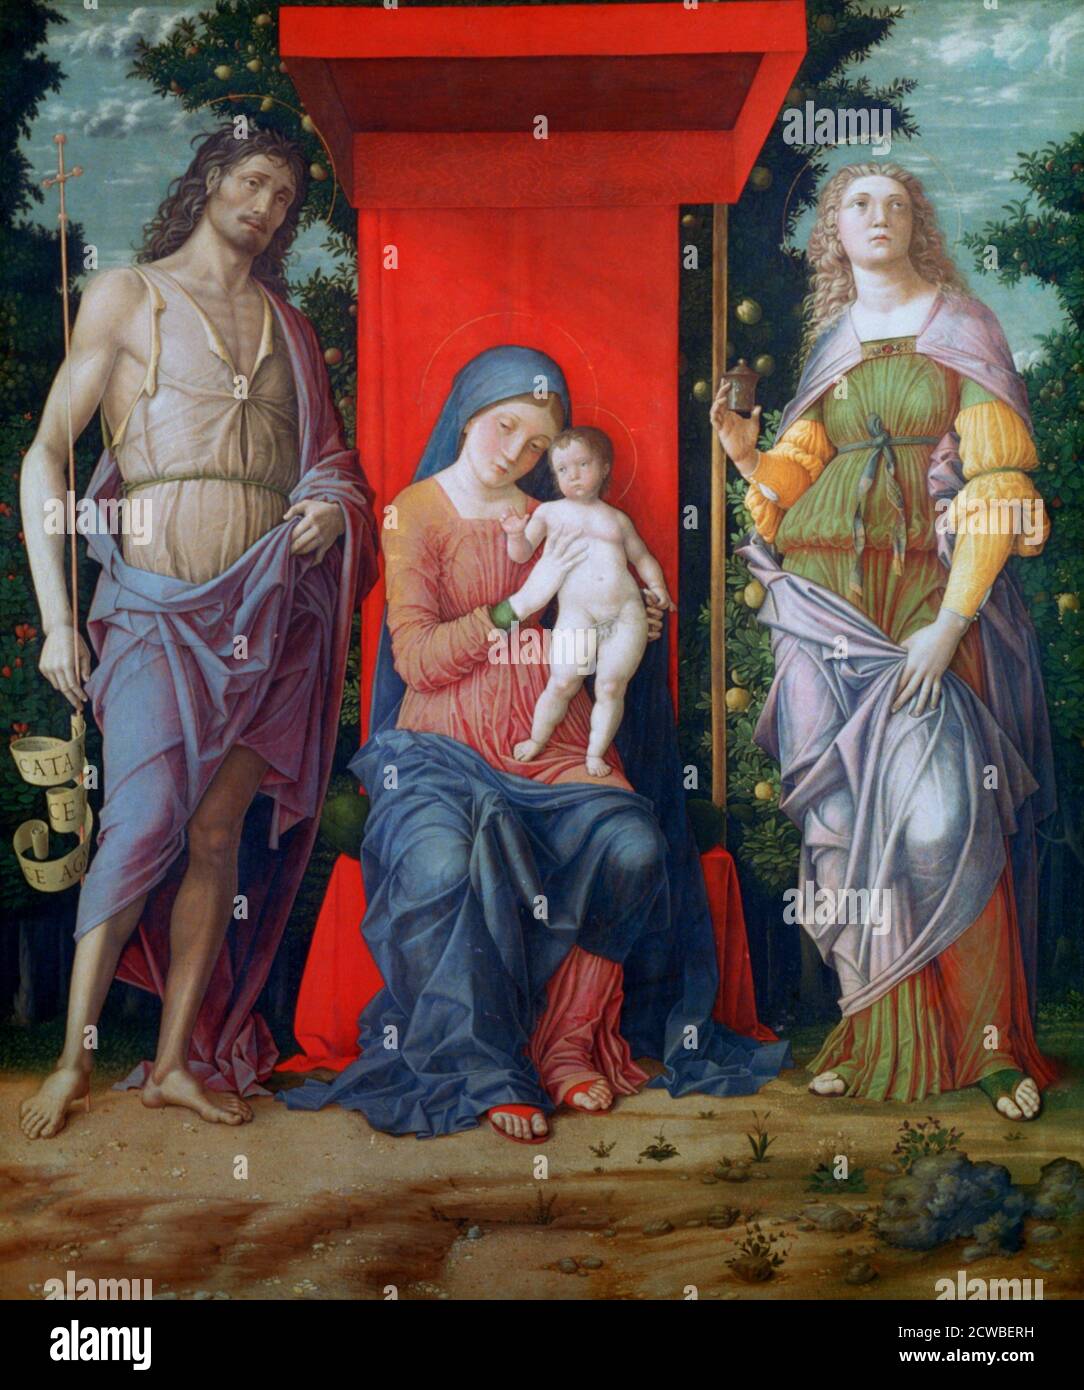 Die Jungfrau und das Kind mit den Heiligen, c1490-1505. Künstler: Andrea Mantegna. Andrea Mantegna (1431-1506) war ein italienischer Maler, Schüler der römischen Archäologie und Schwiegersohn von Jacopo Bellini. Stockfoto